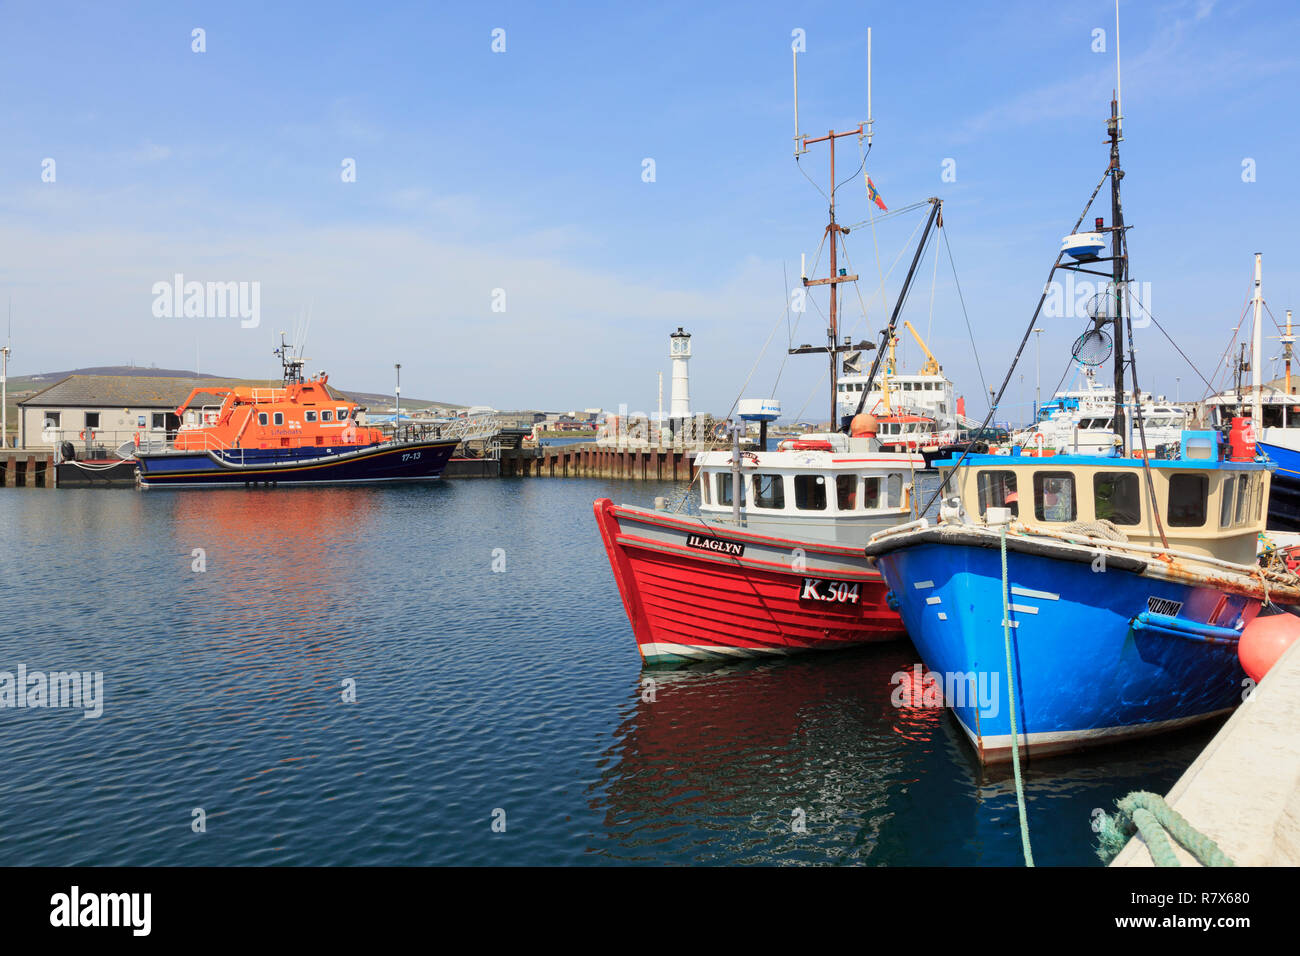 Barcos pesqueros amarrados en el puerto interior con un bote salvavidas más allá. Kirkwall, Península de las Islas Orcadas, Escocia, Reino Unido, Gran Bretaña Foto de stock